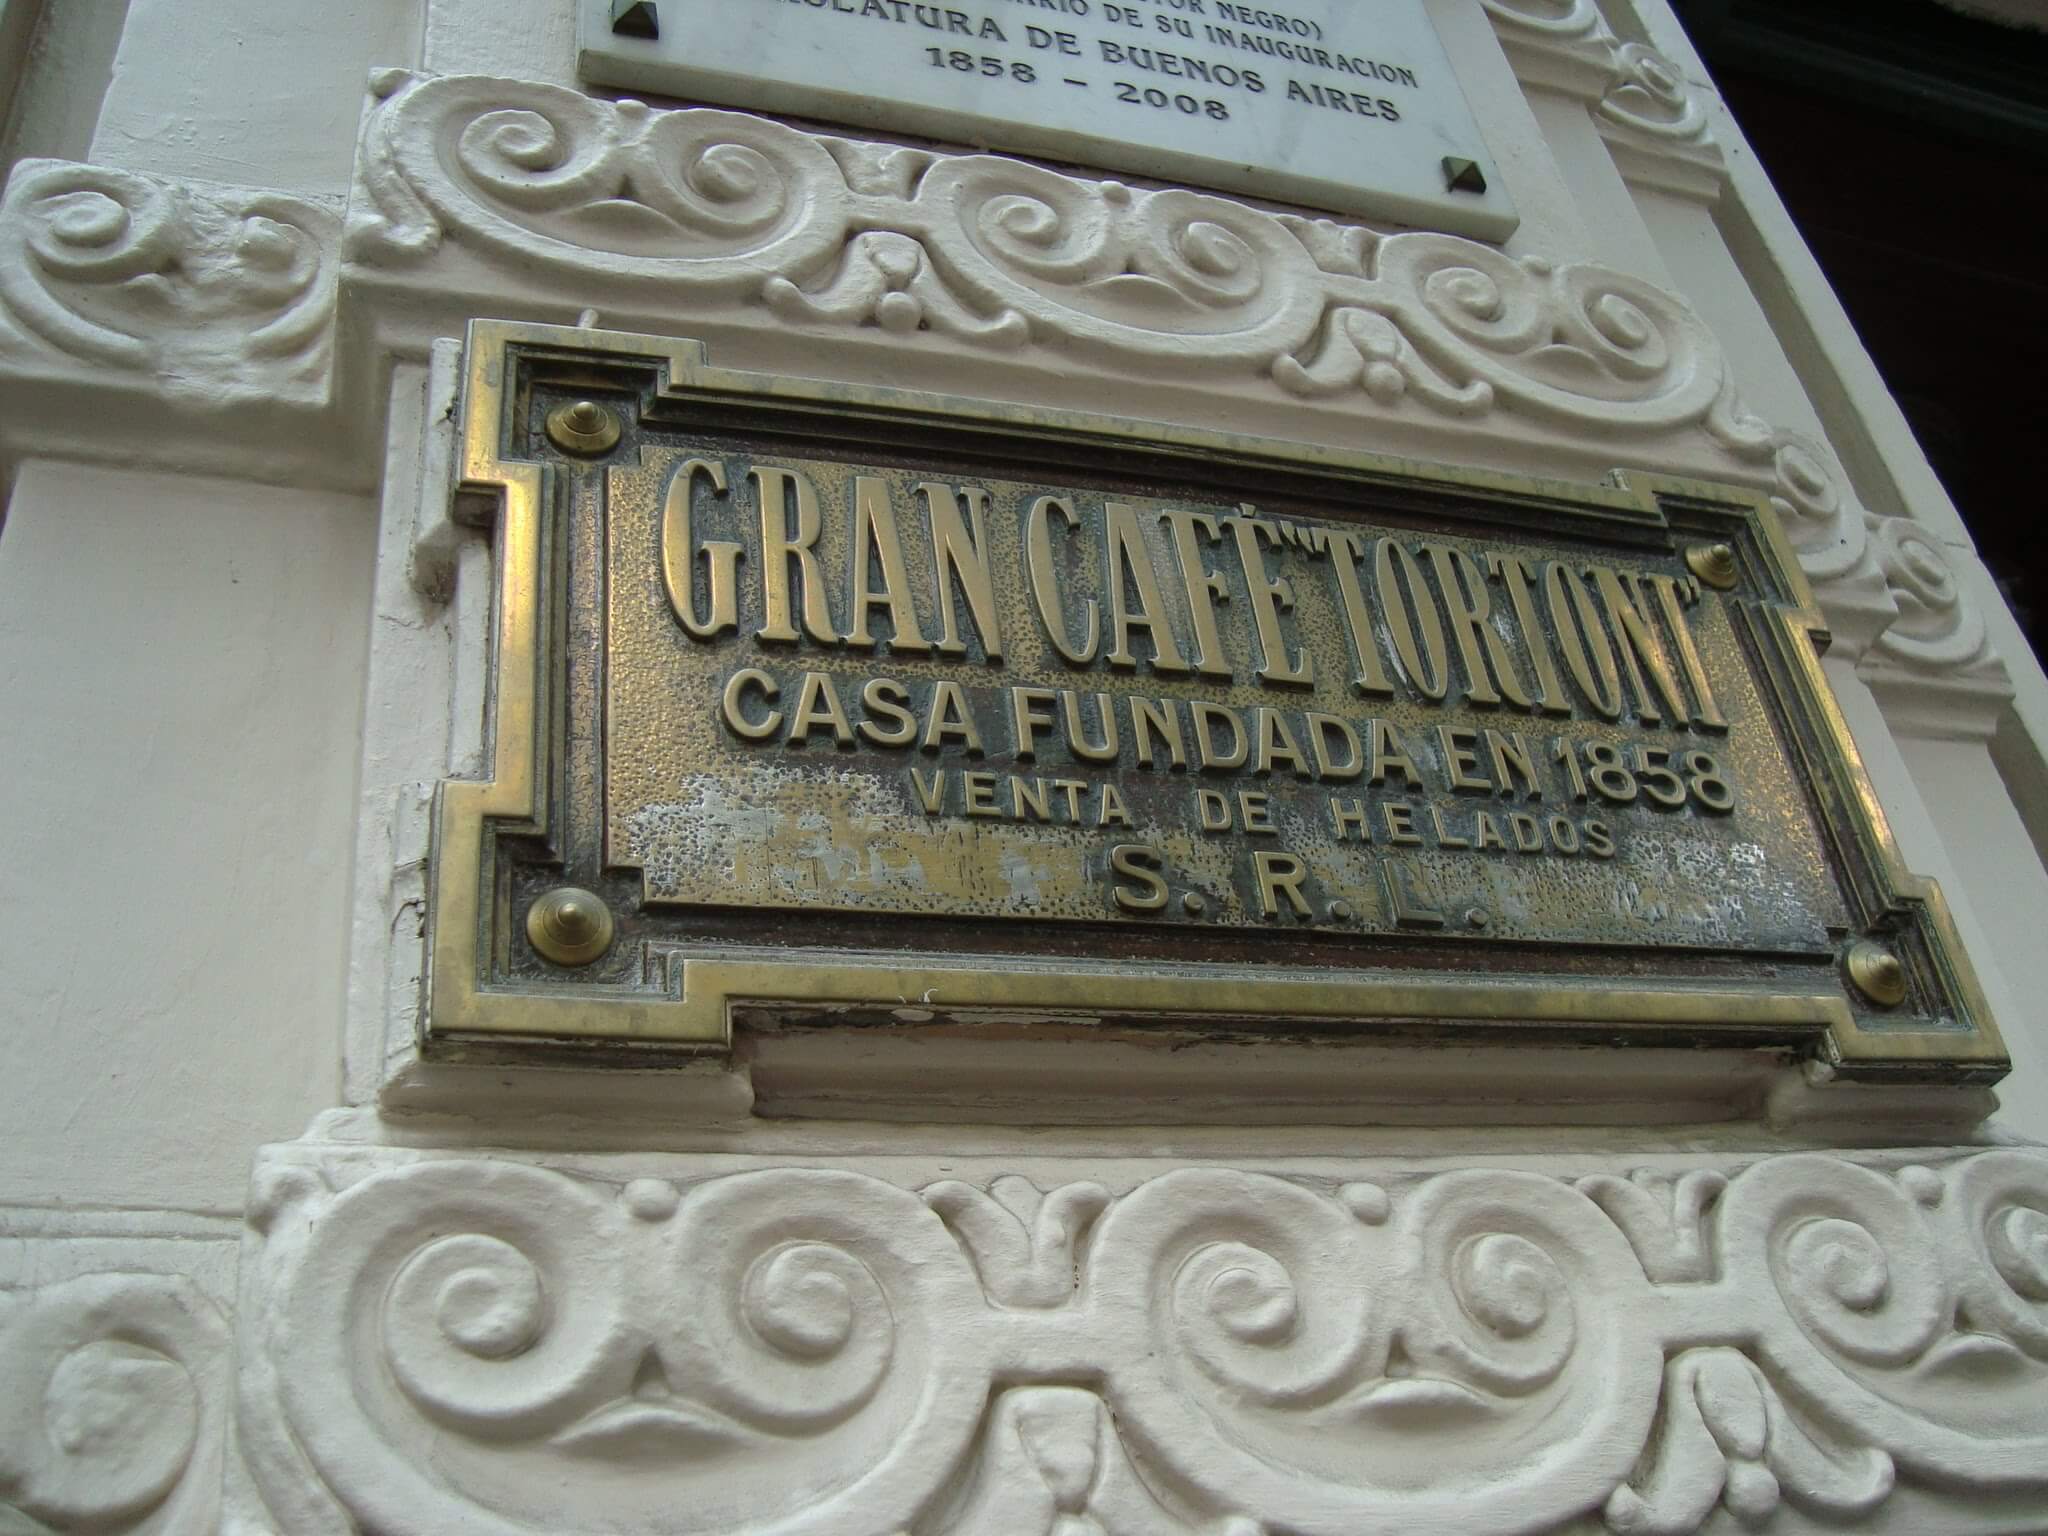 Café Tortoni - um clássico em Buenos Aires